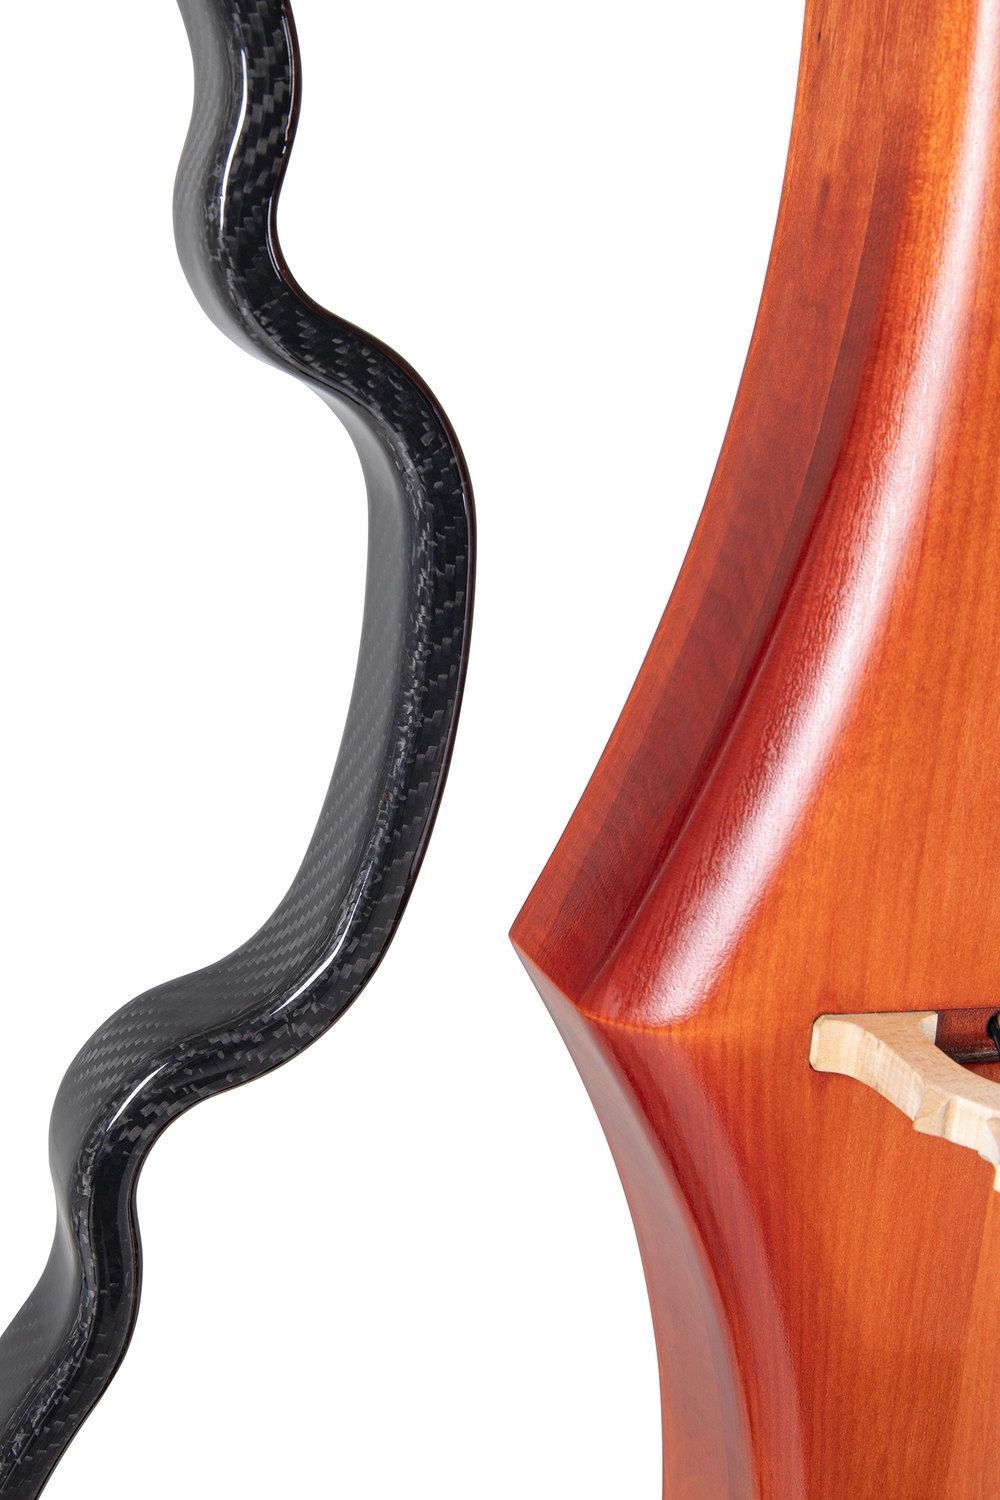 GEWA E-Cello NOVITA 3.0 Farbe goldbraun